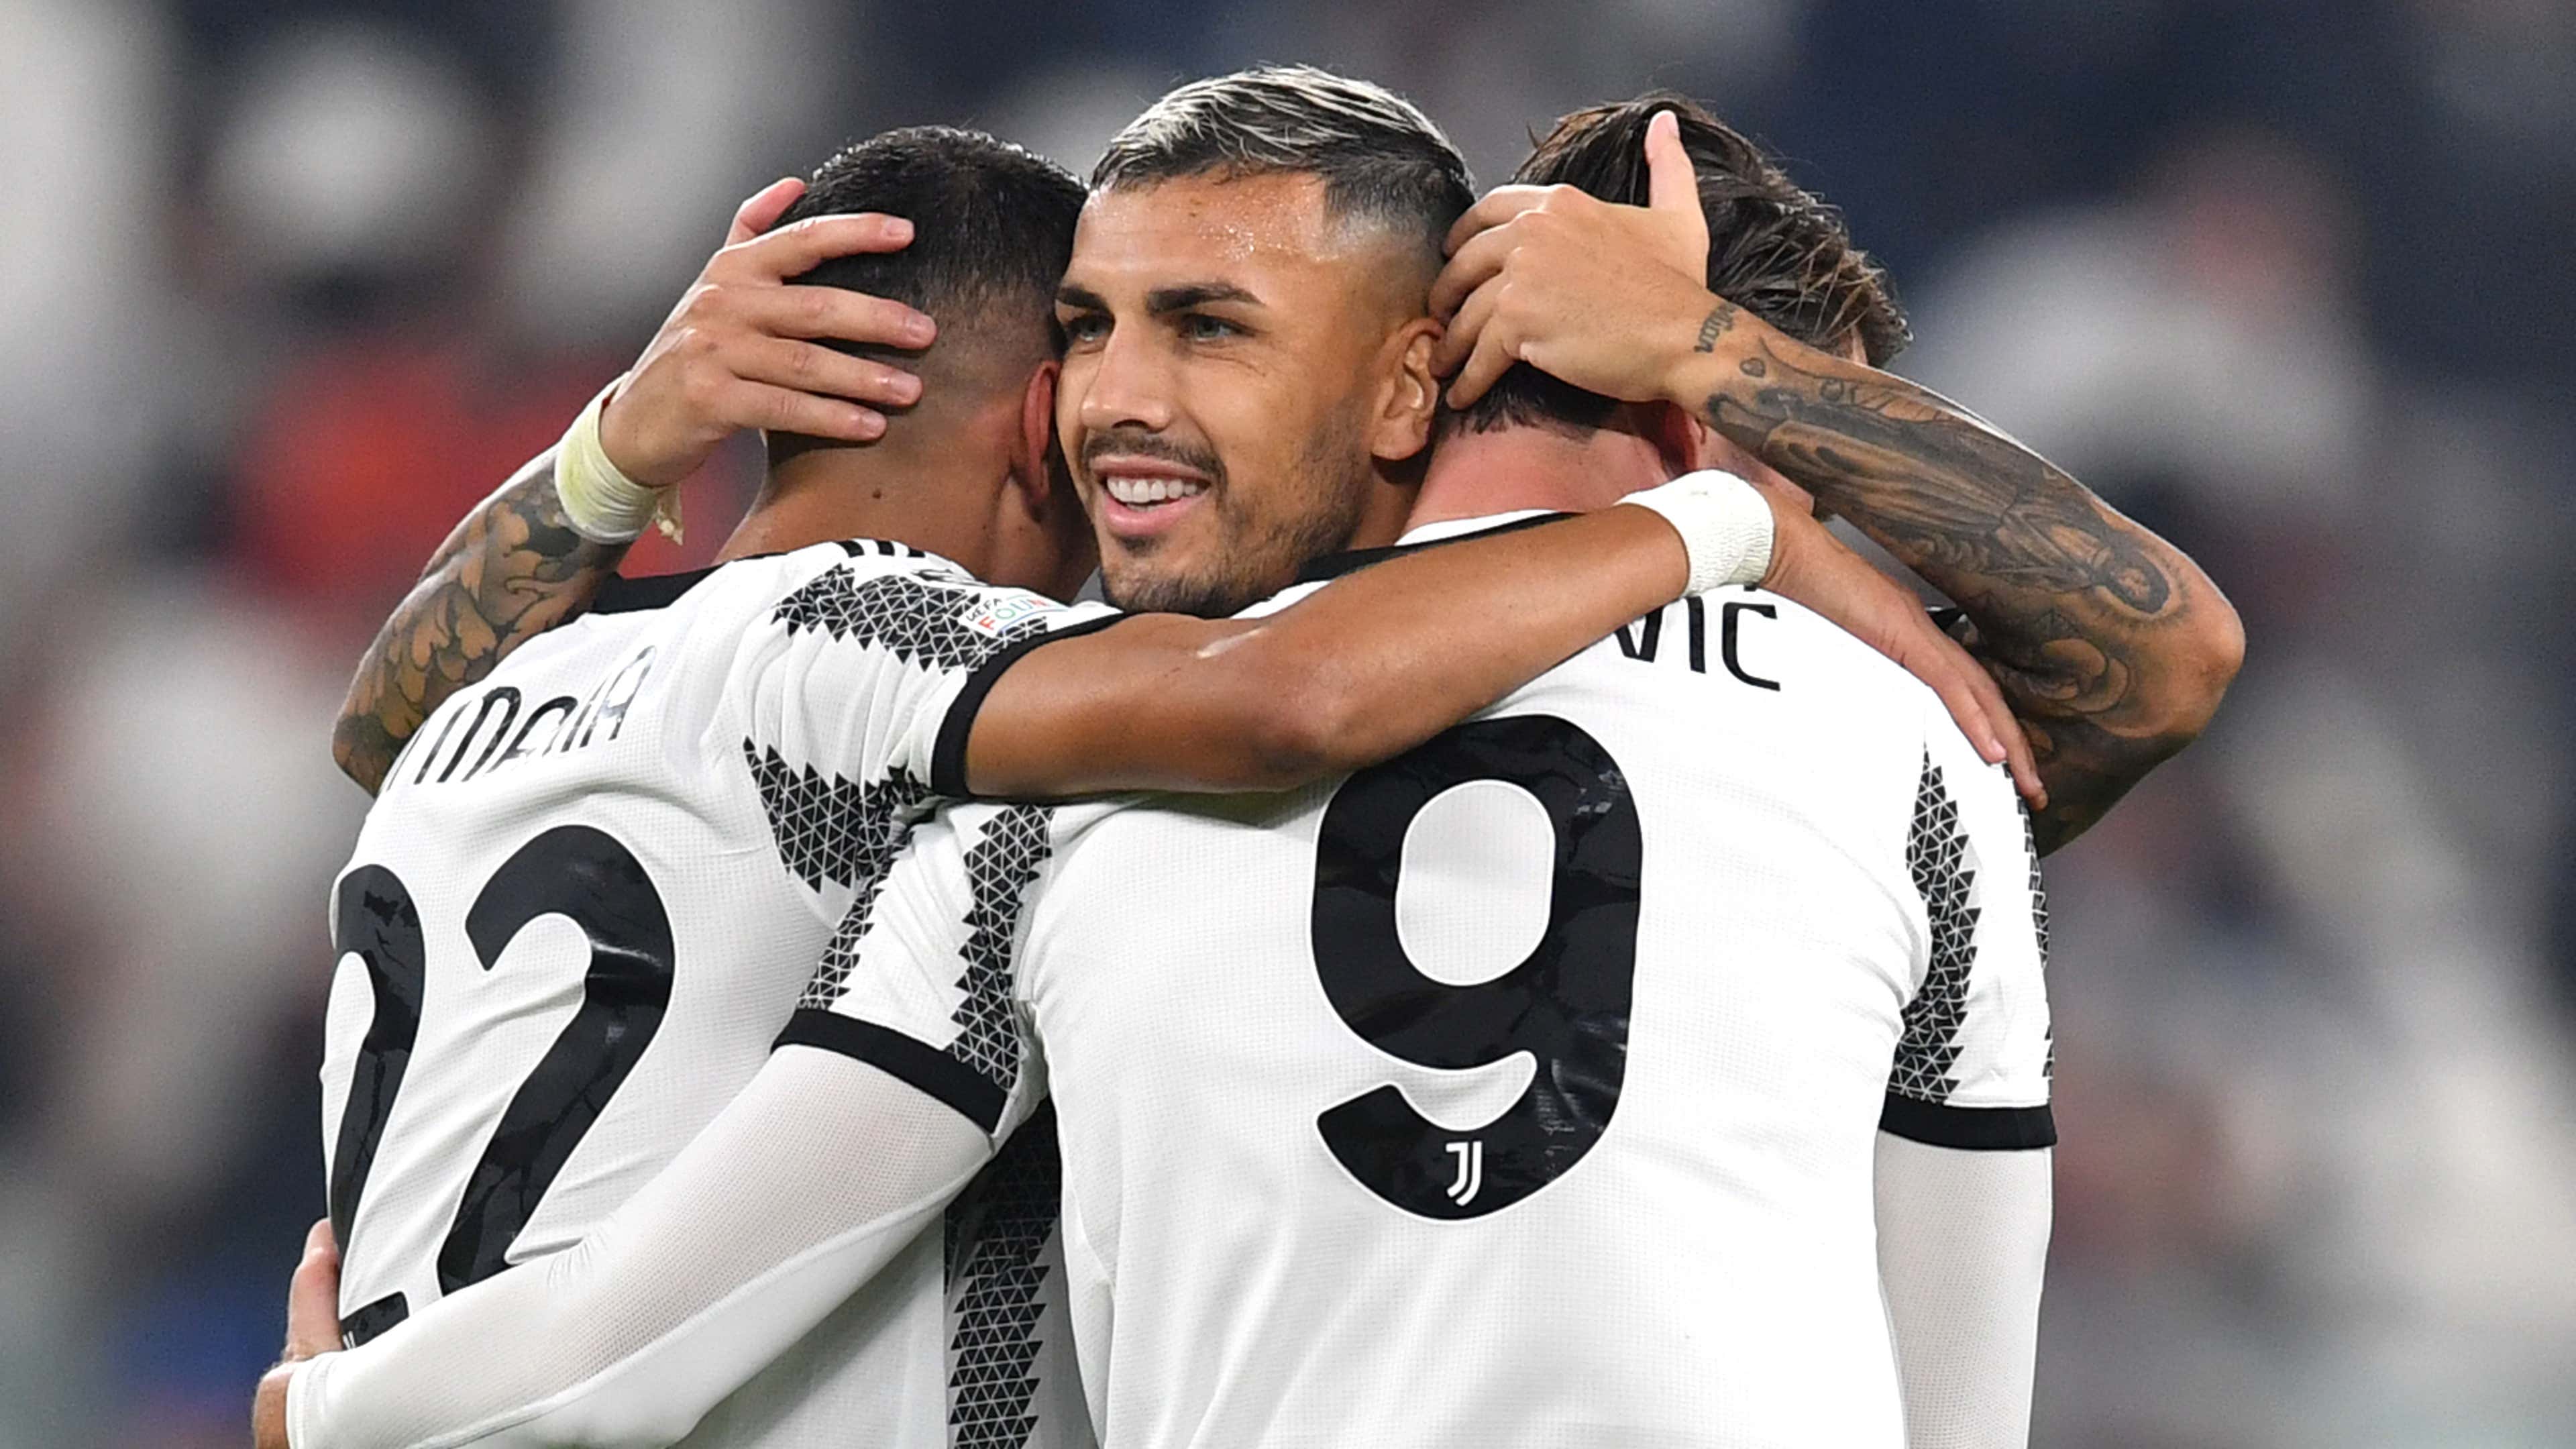 Inter de Milão x Juventus pela Copa da Itália 2022-23: onde assistir ao vivo